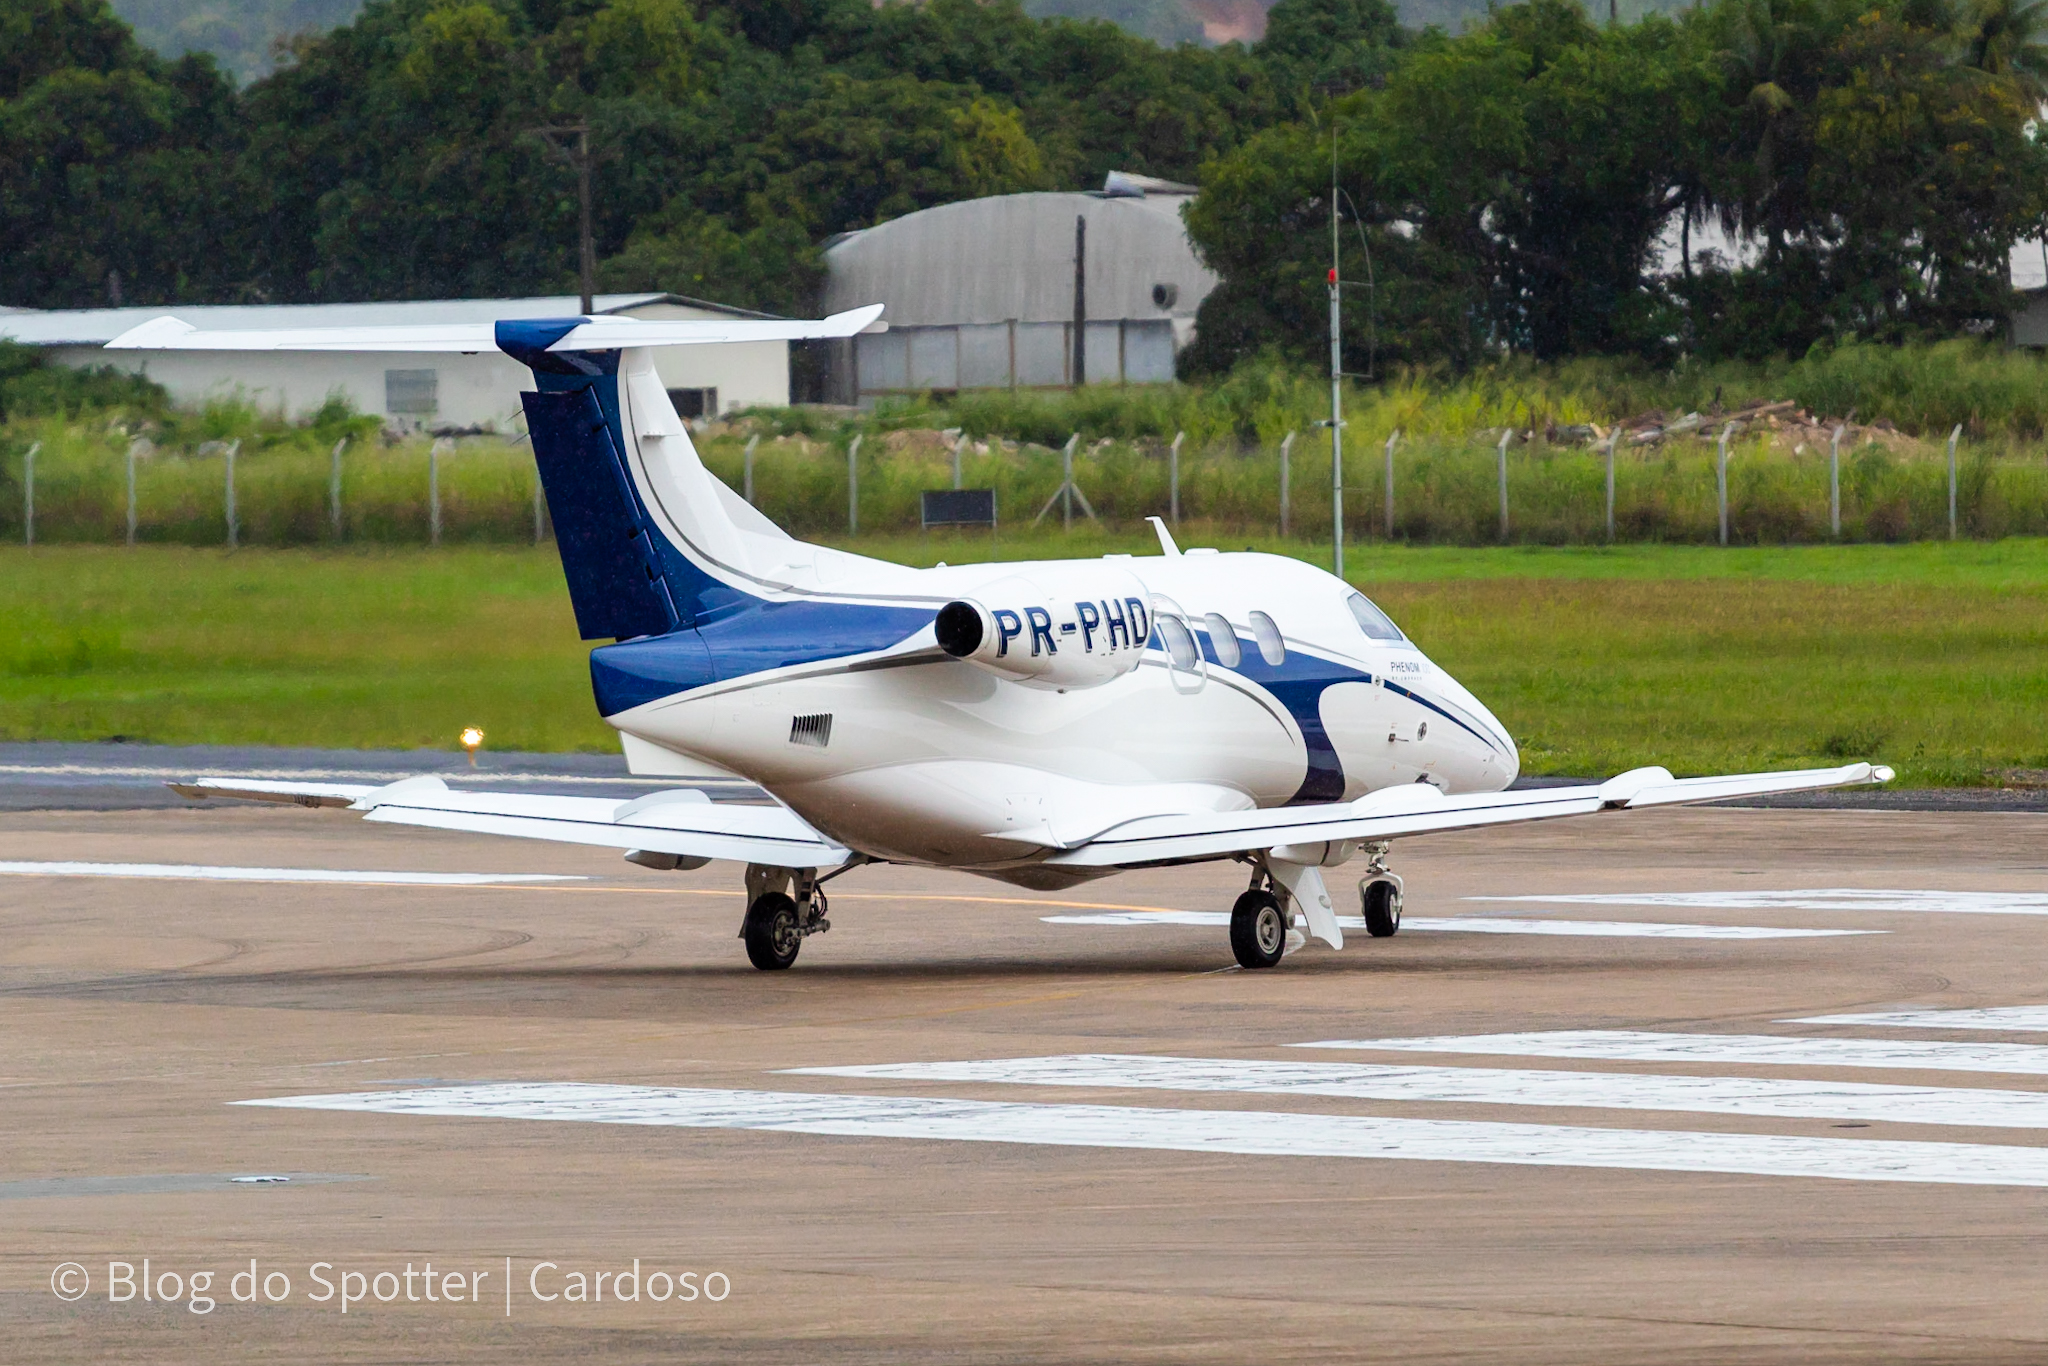 PR-PHD – Embraer Phenom 100 – Aviação Geral